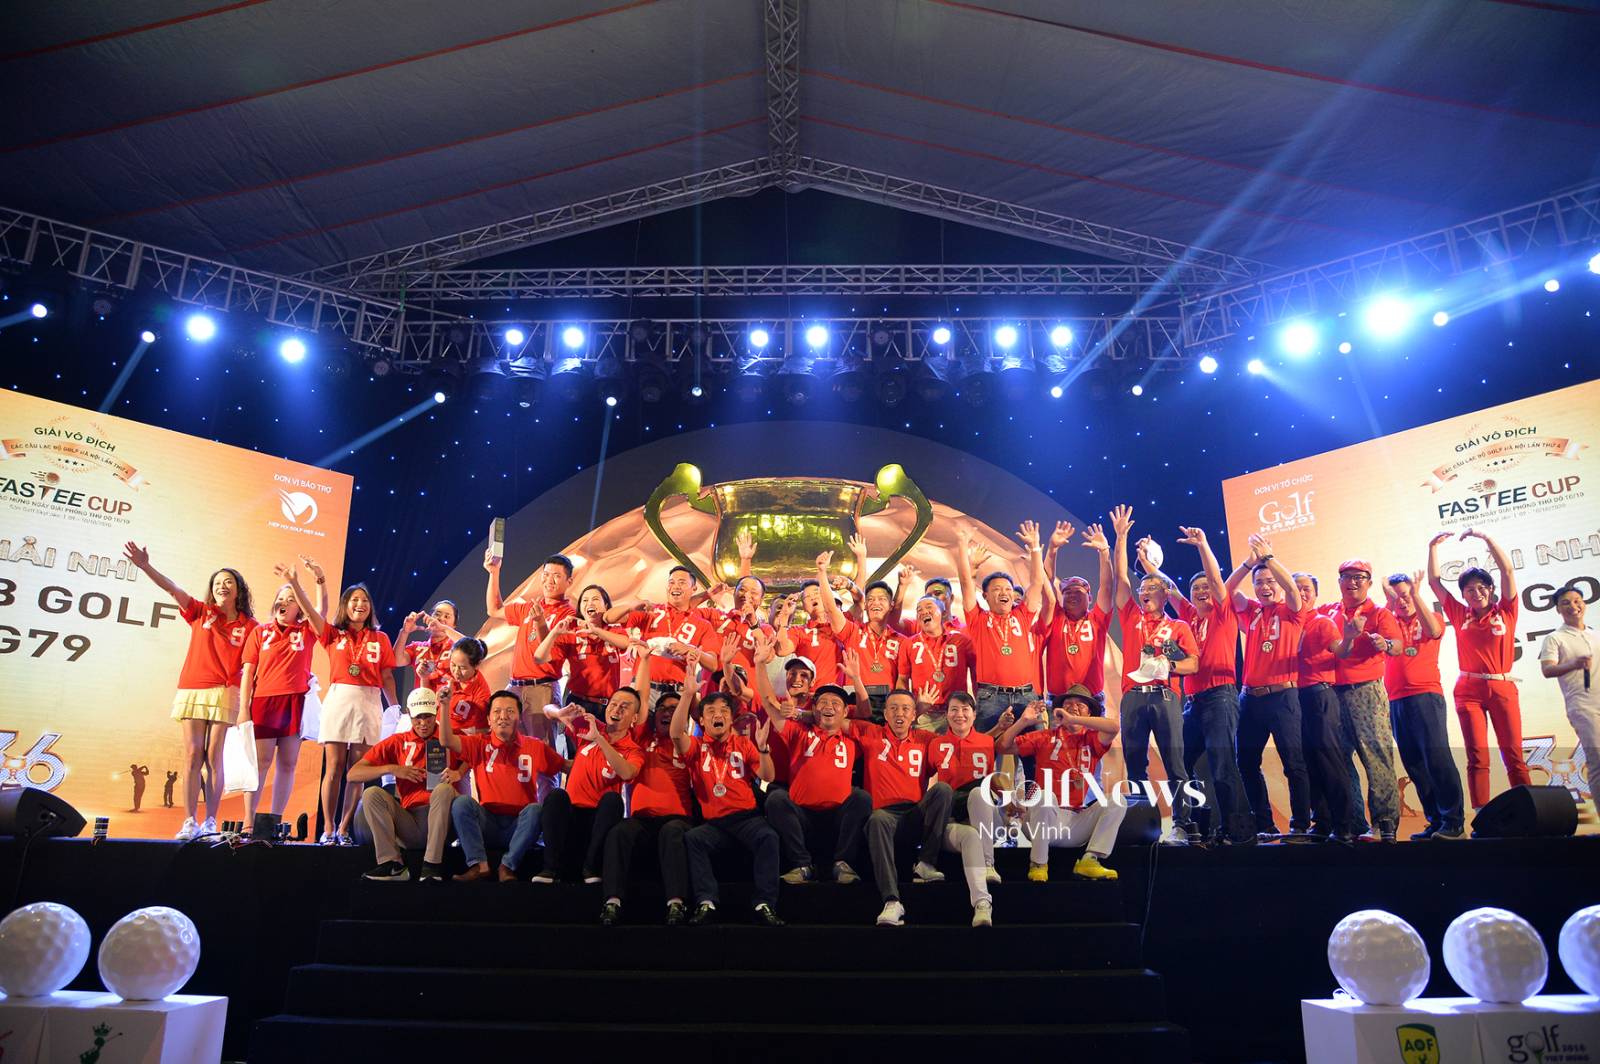 Highlight: Ngày 2 chung kết Vô địch các CLB Golf Hà Nội lần 4 - Fastee Cup